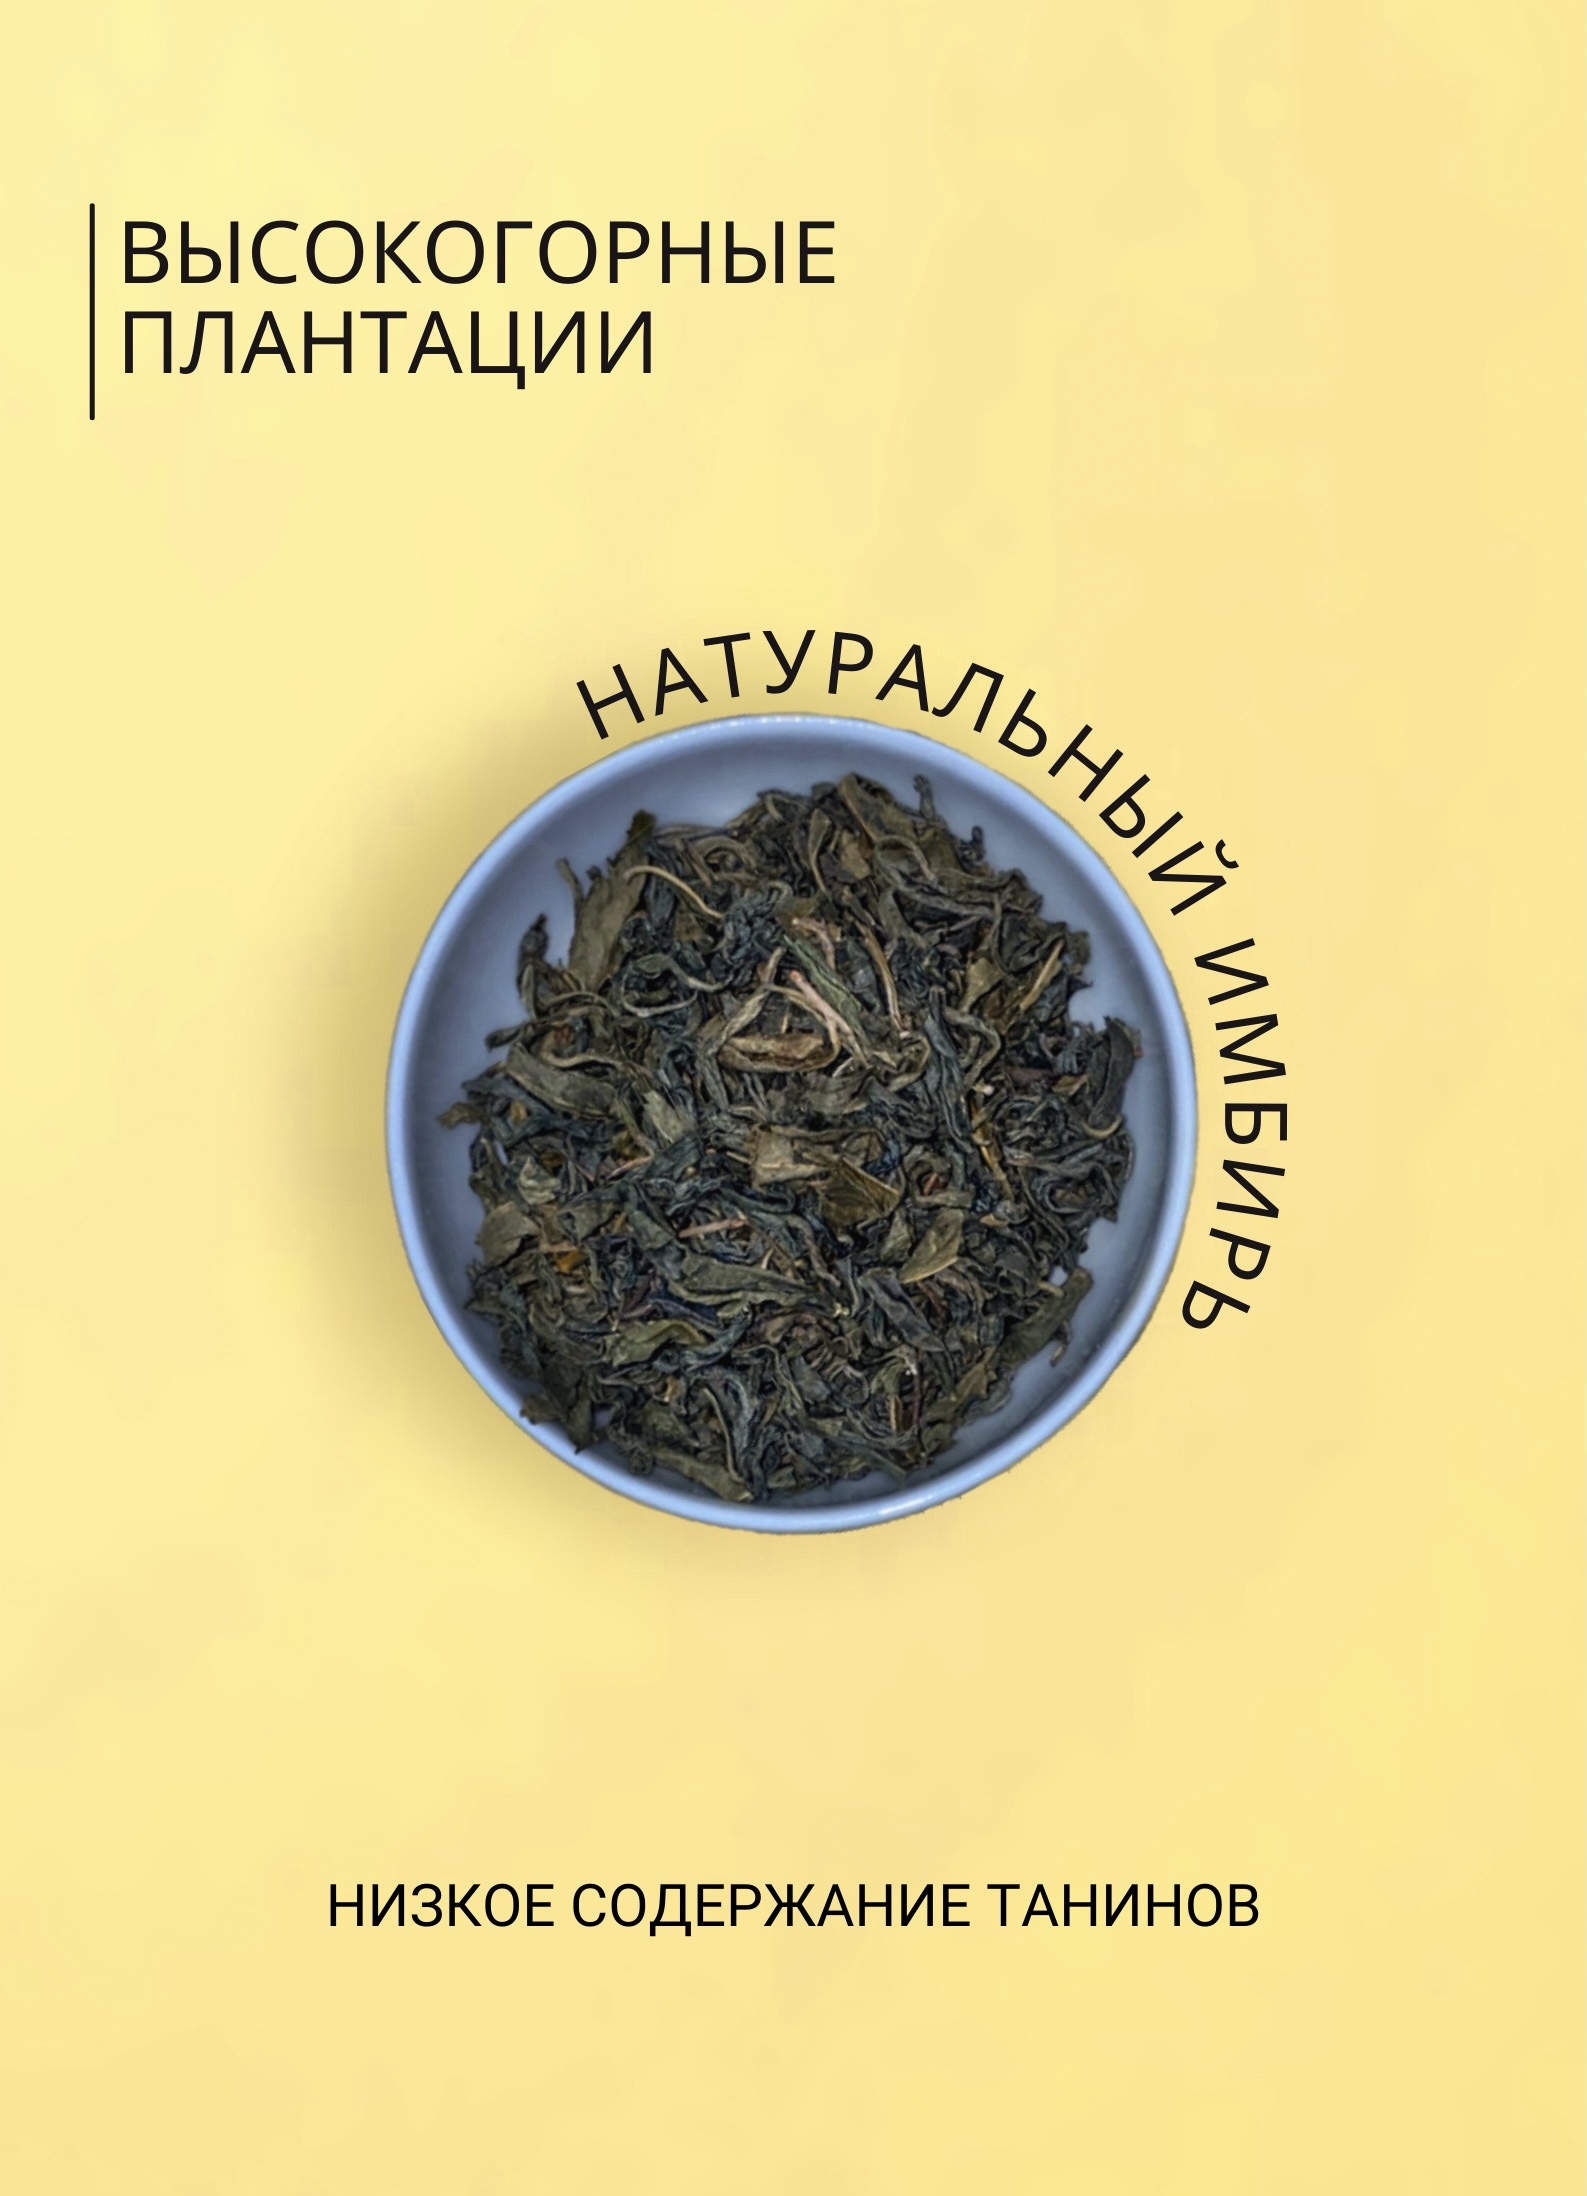 Зеленый крупнолистовой чай KANTARIA в тубе c имбирем - фото 4